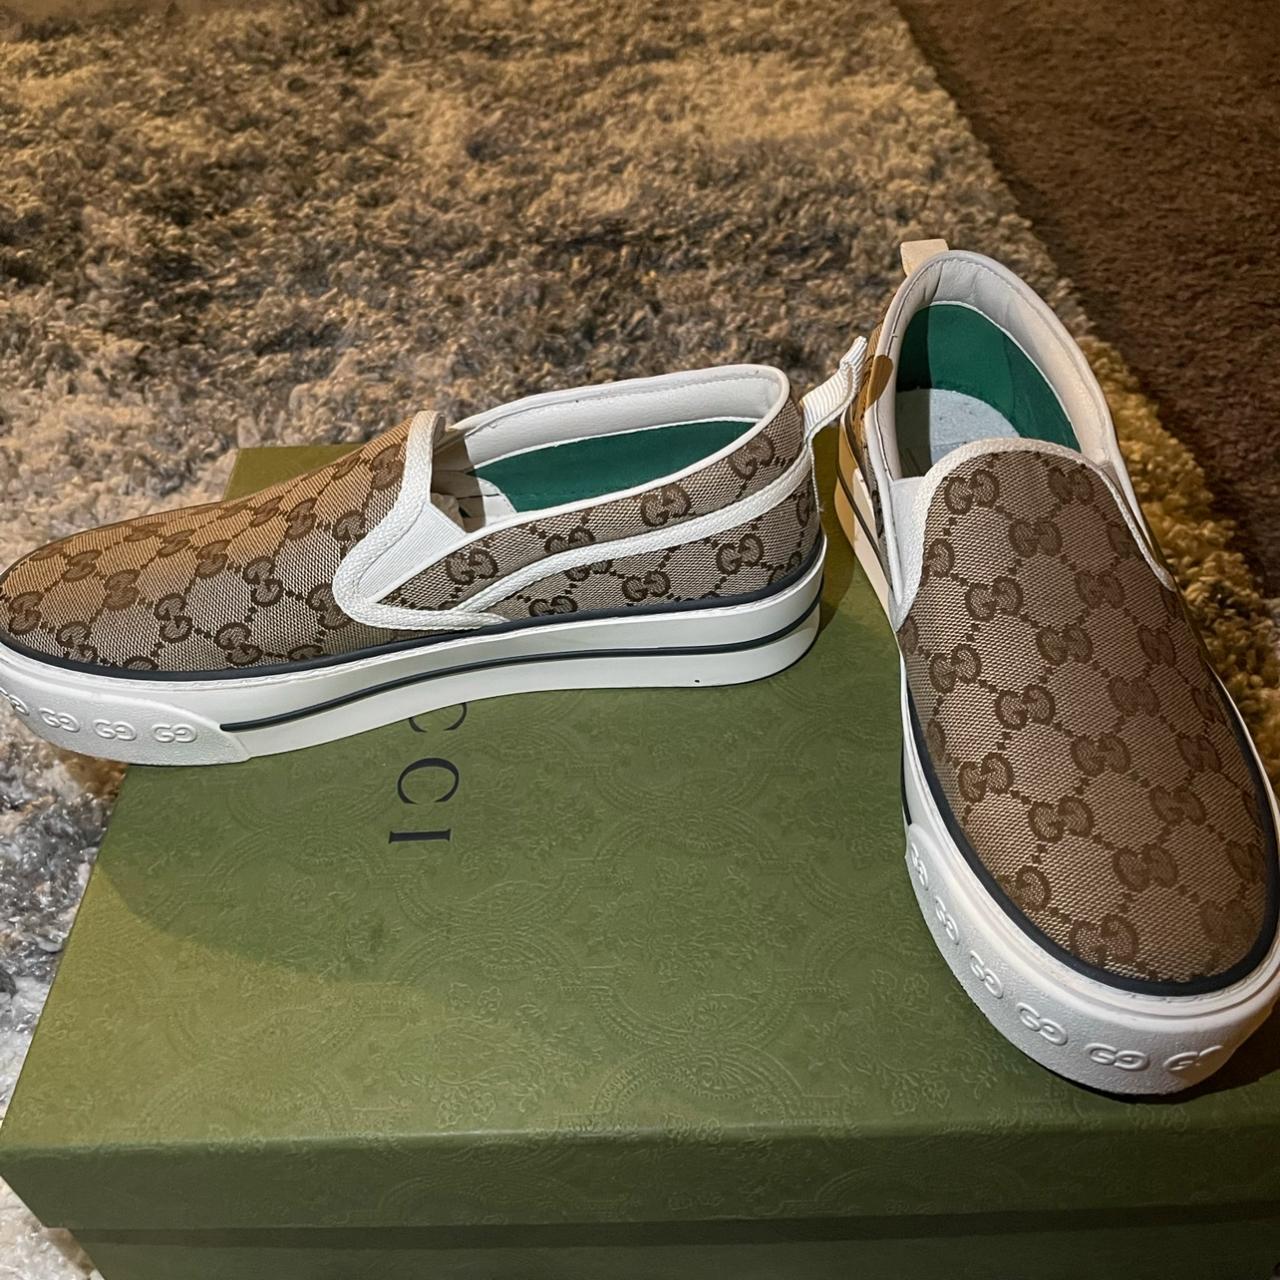 Gucci Tennis 1977 Slip-On Sneaker. Size 36. - Depop